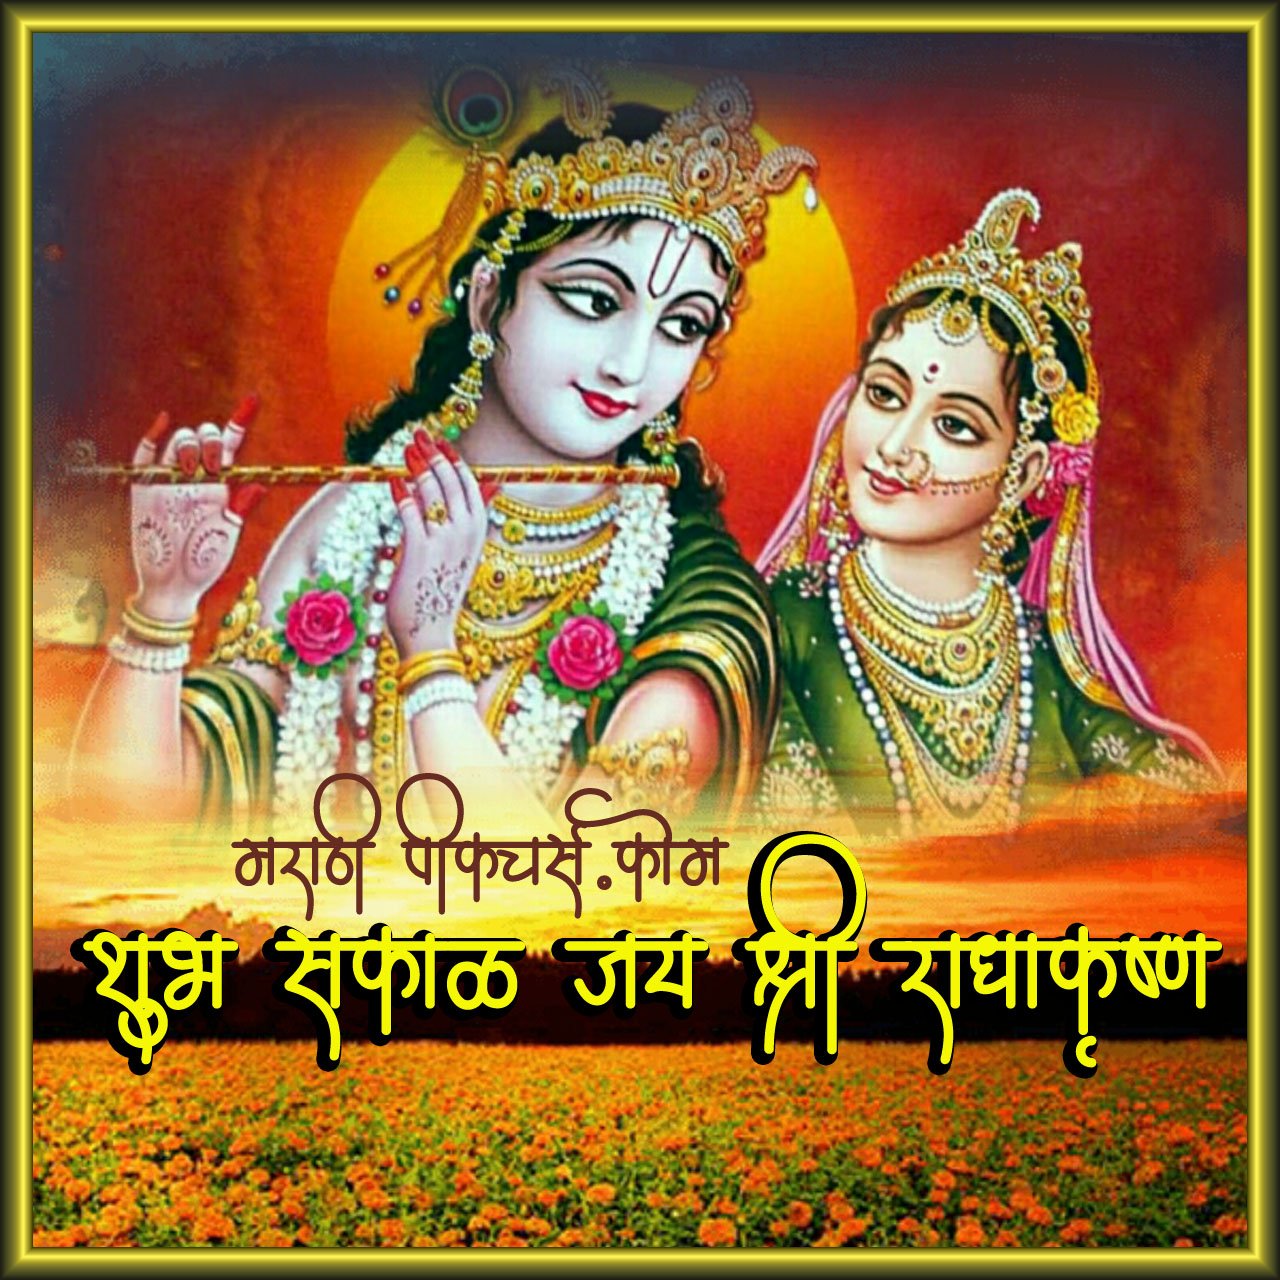 Shubh Sakal Jai Shri Radha Krishna